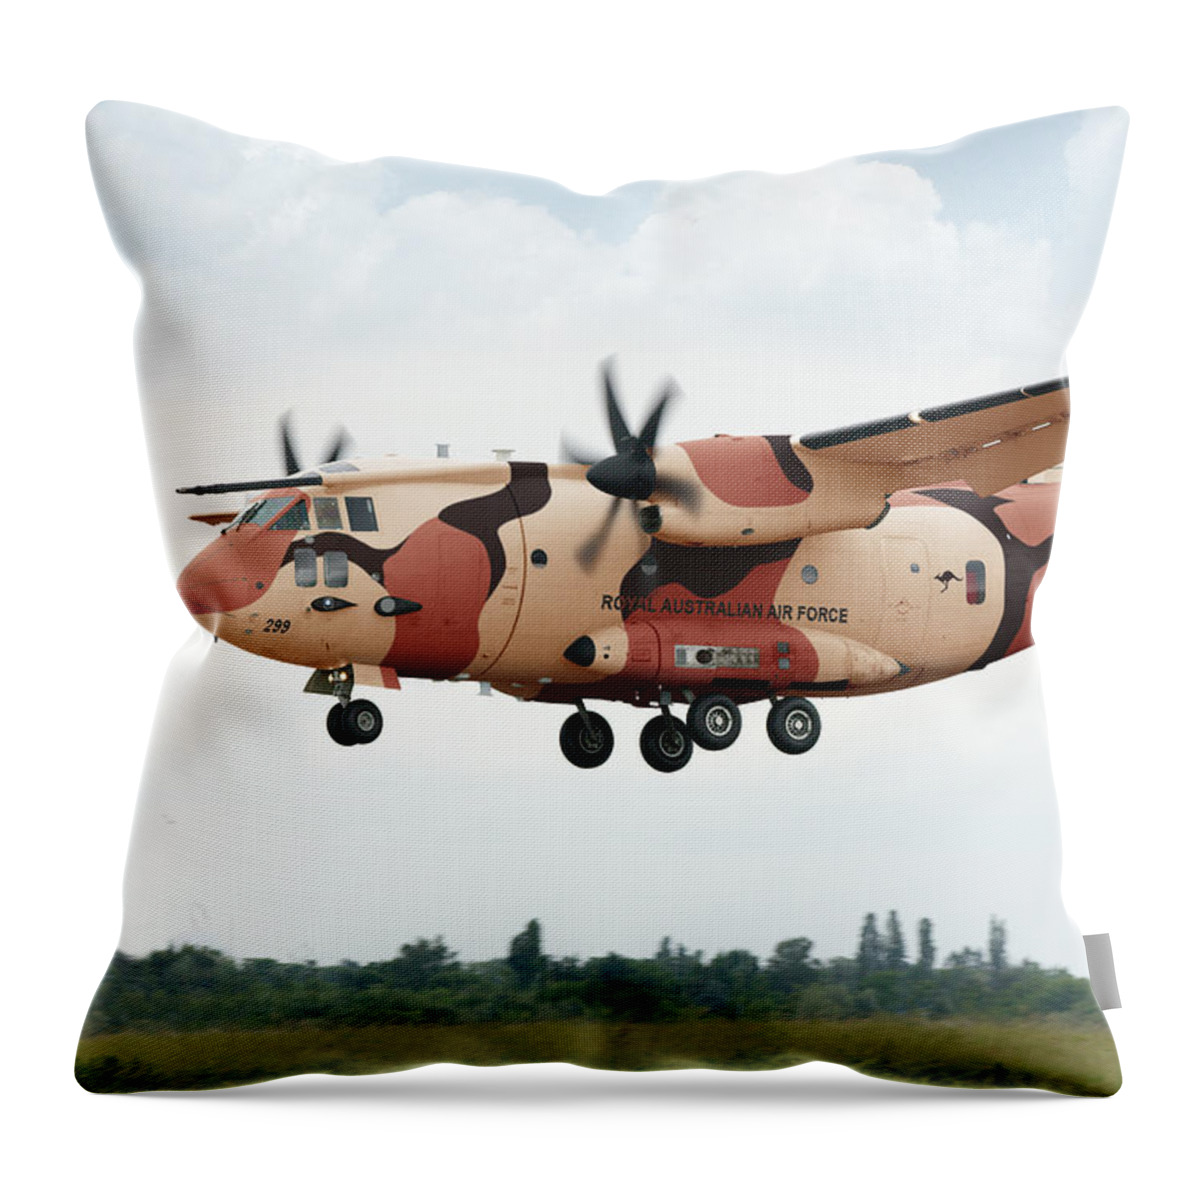 Spartan Throw Pillow featuring the digital art RAAF C-27J Spartan Desert by Custom Aviation Art